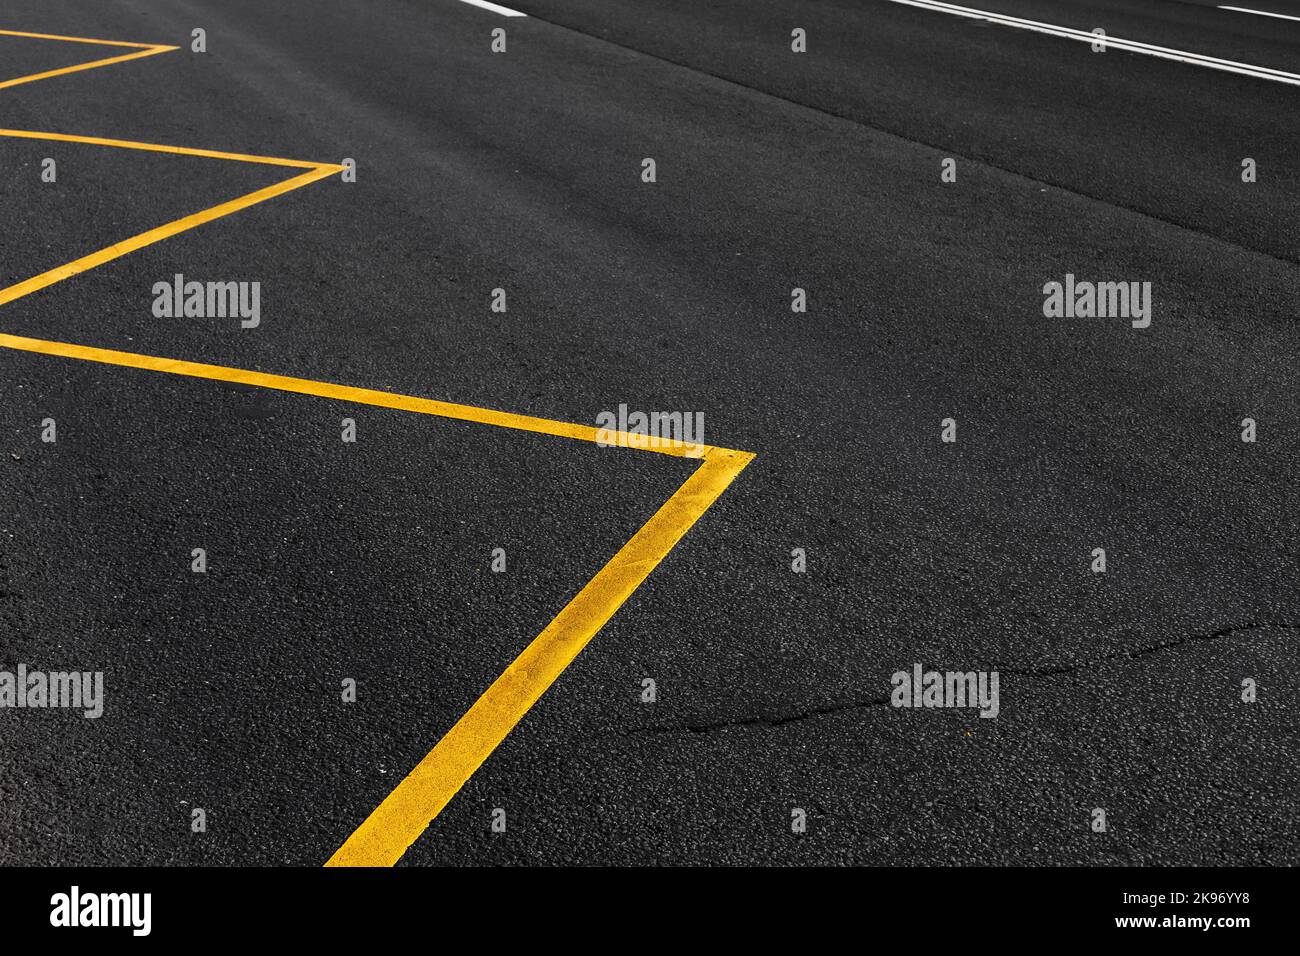 Marquage de route jaune d'une zone d'arrêt d'autobus, photo de fond abstraite de transport Banque D'Images